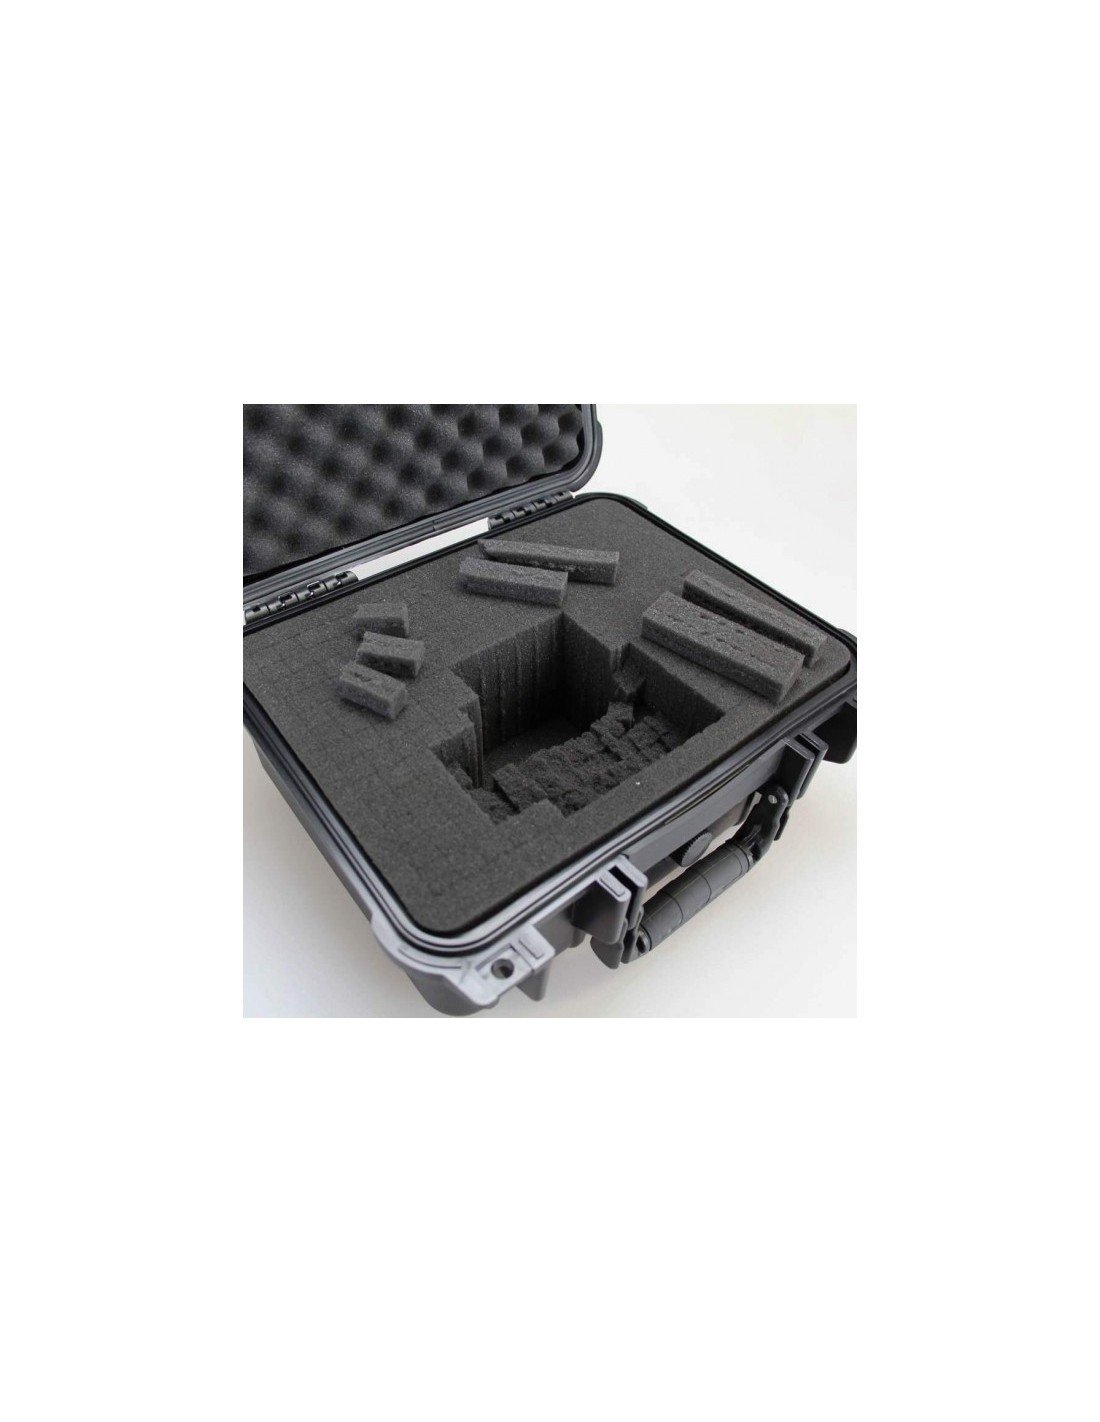 Fatbox VS60 херметически защитен куфар